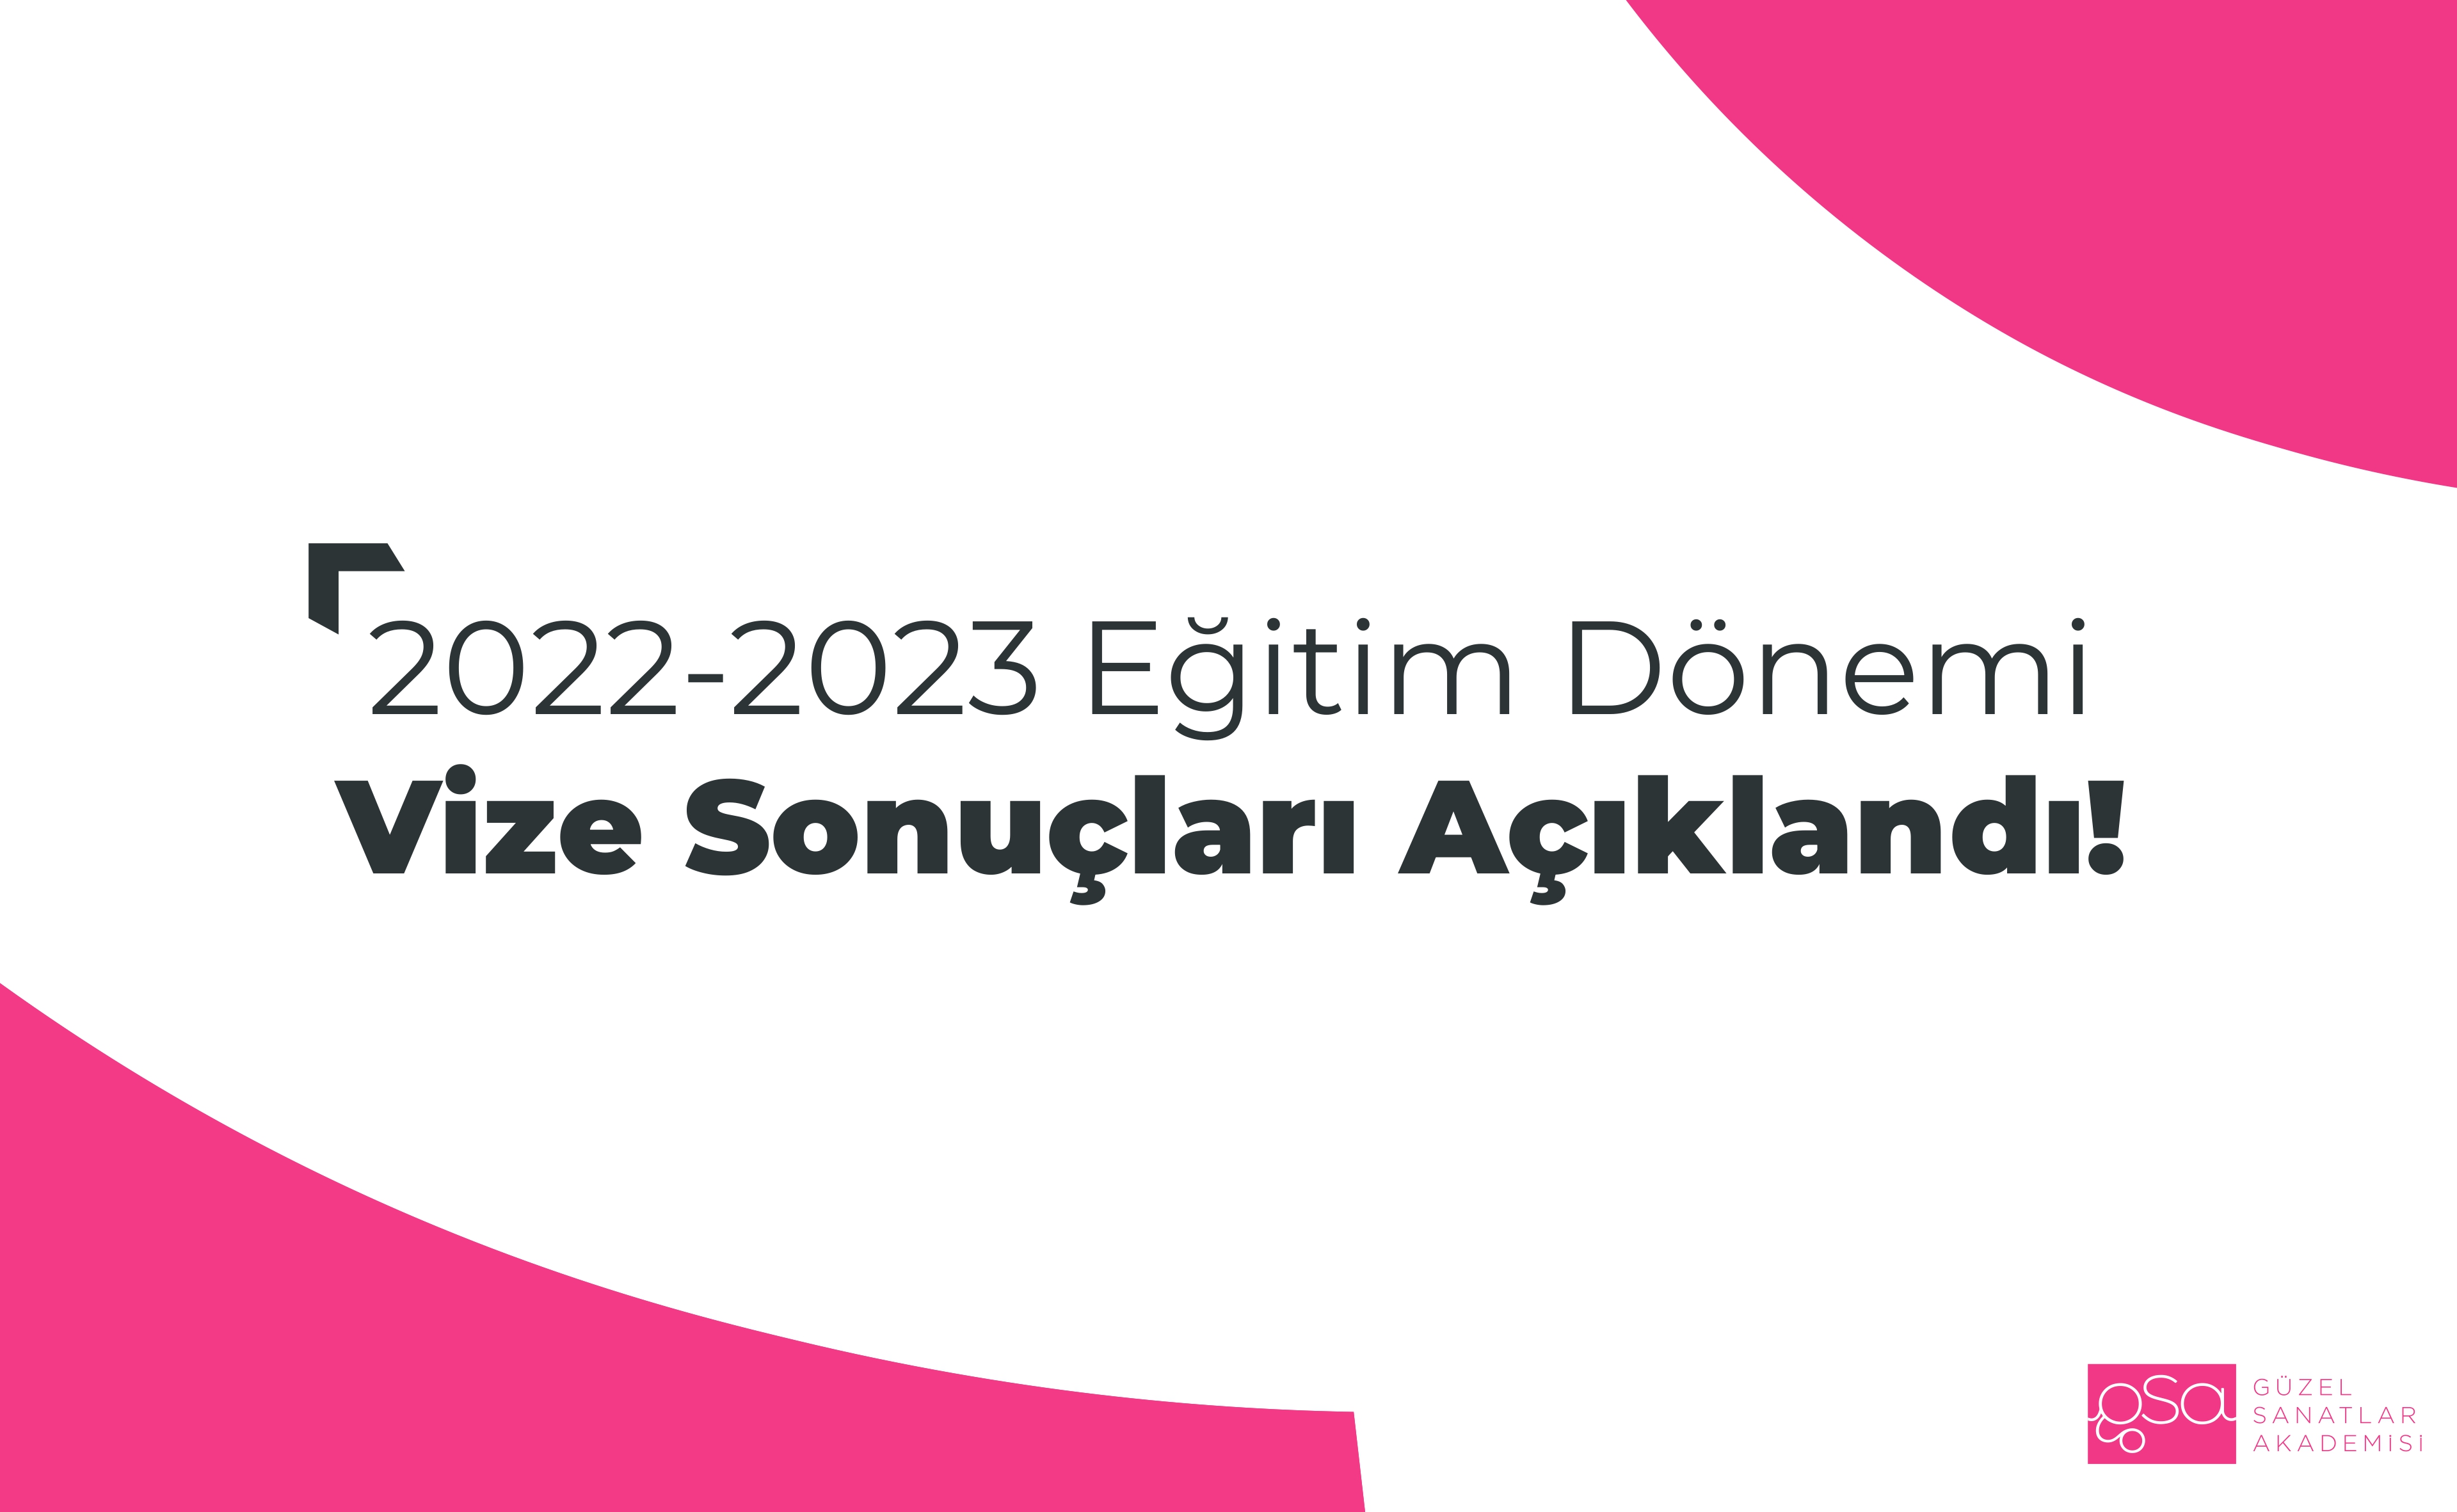 2022-23 Eğitim Dönemi Vize Sonuçları Açıklandı. 